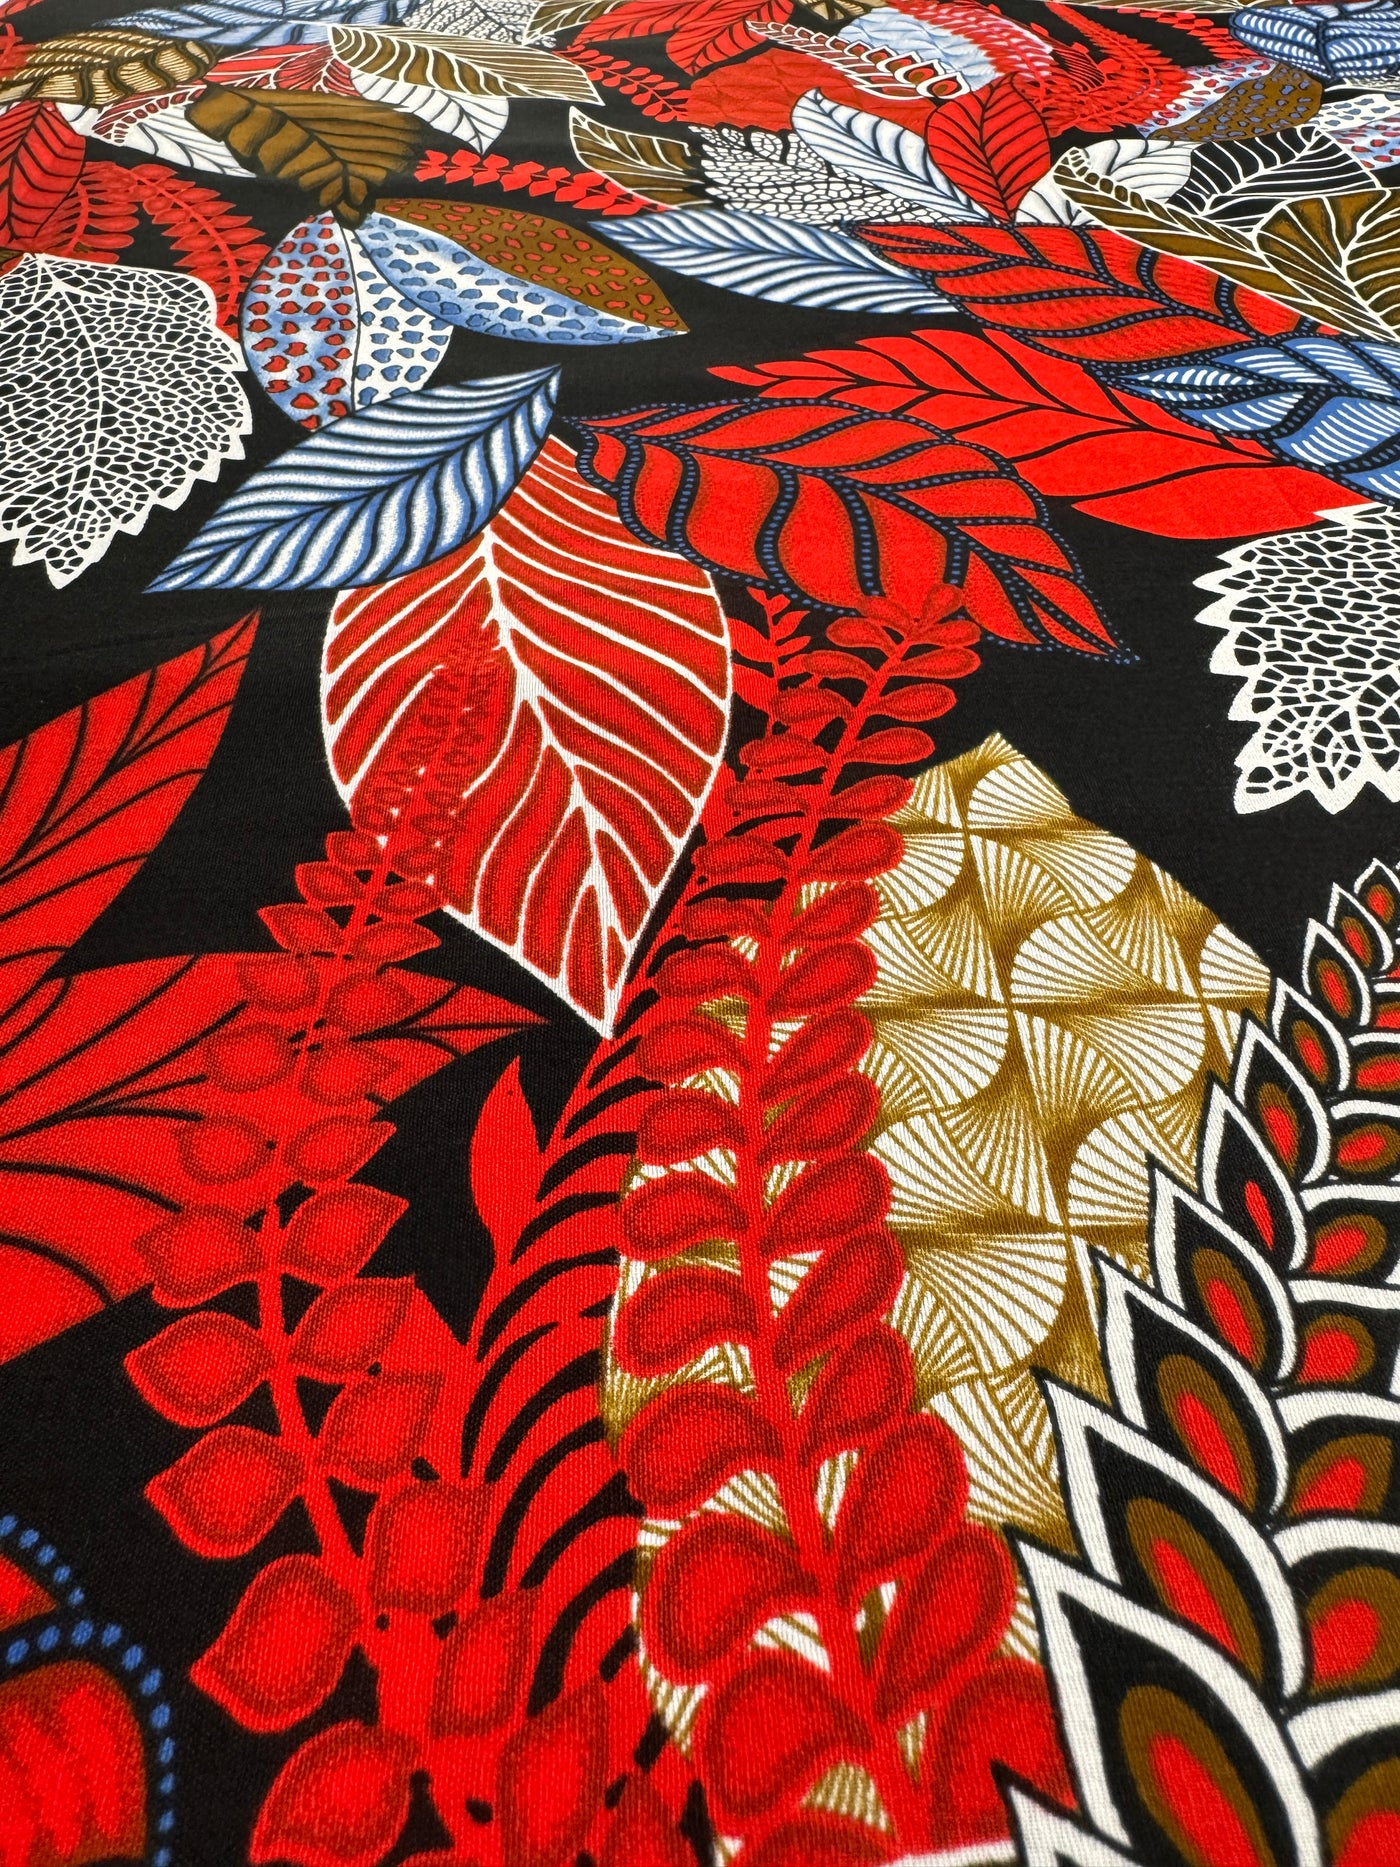 Ankara Fabric - 2637625HB